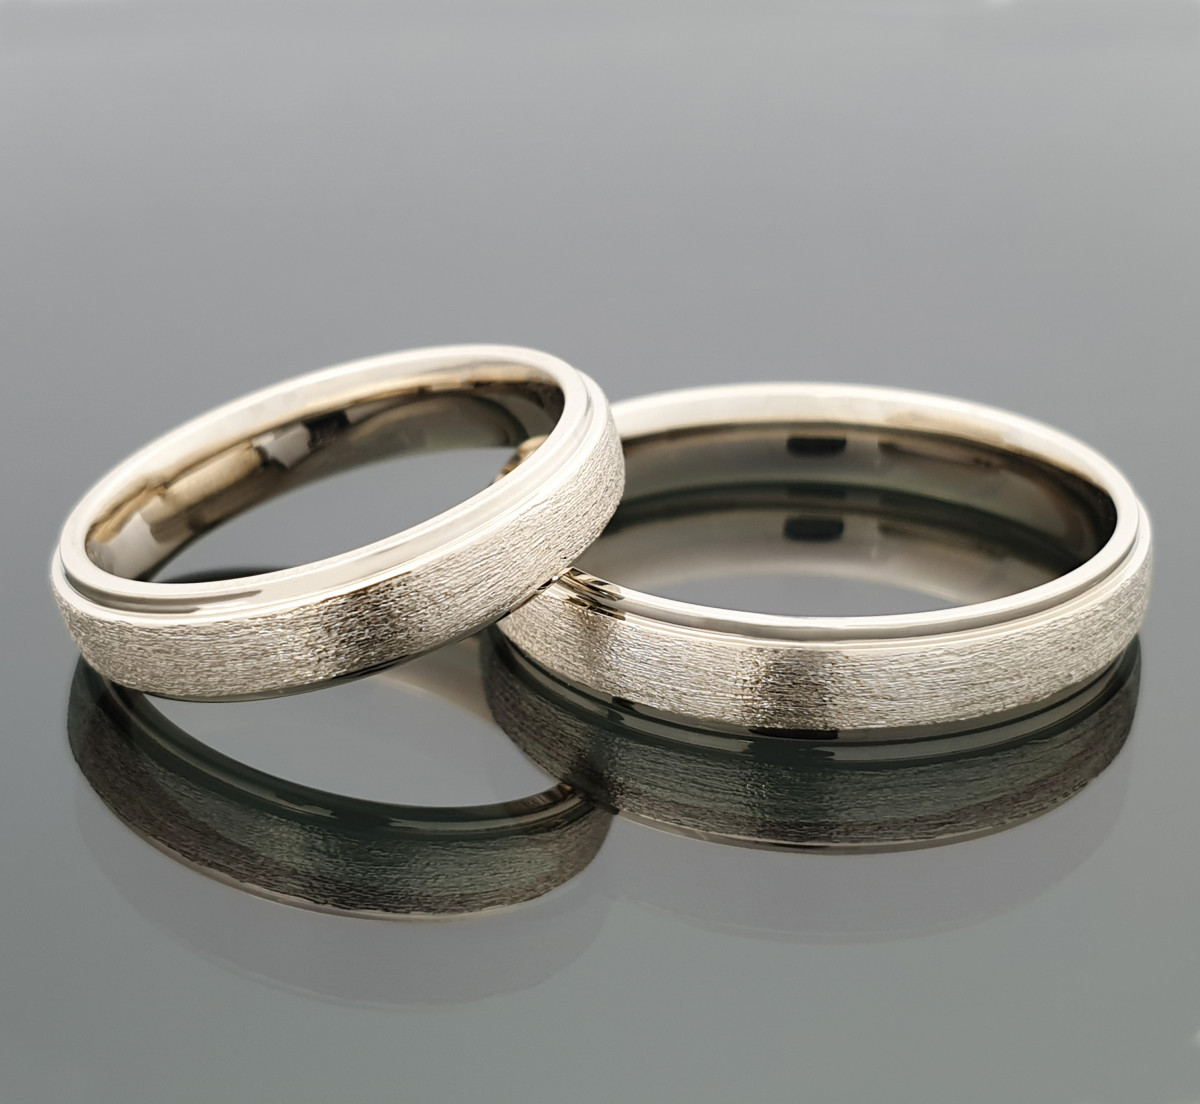  White gold wedding rings (vz80) 1